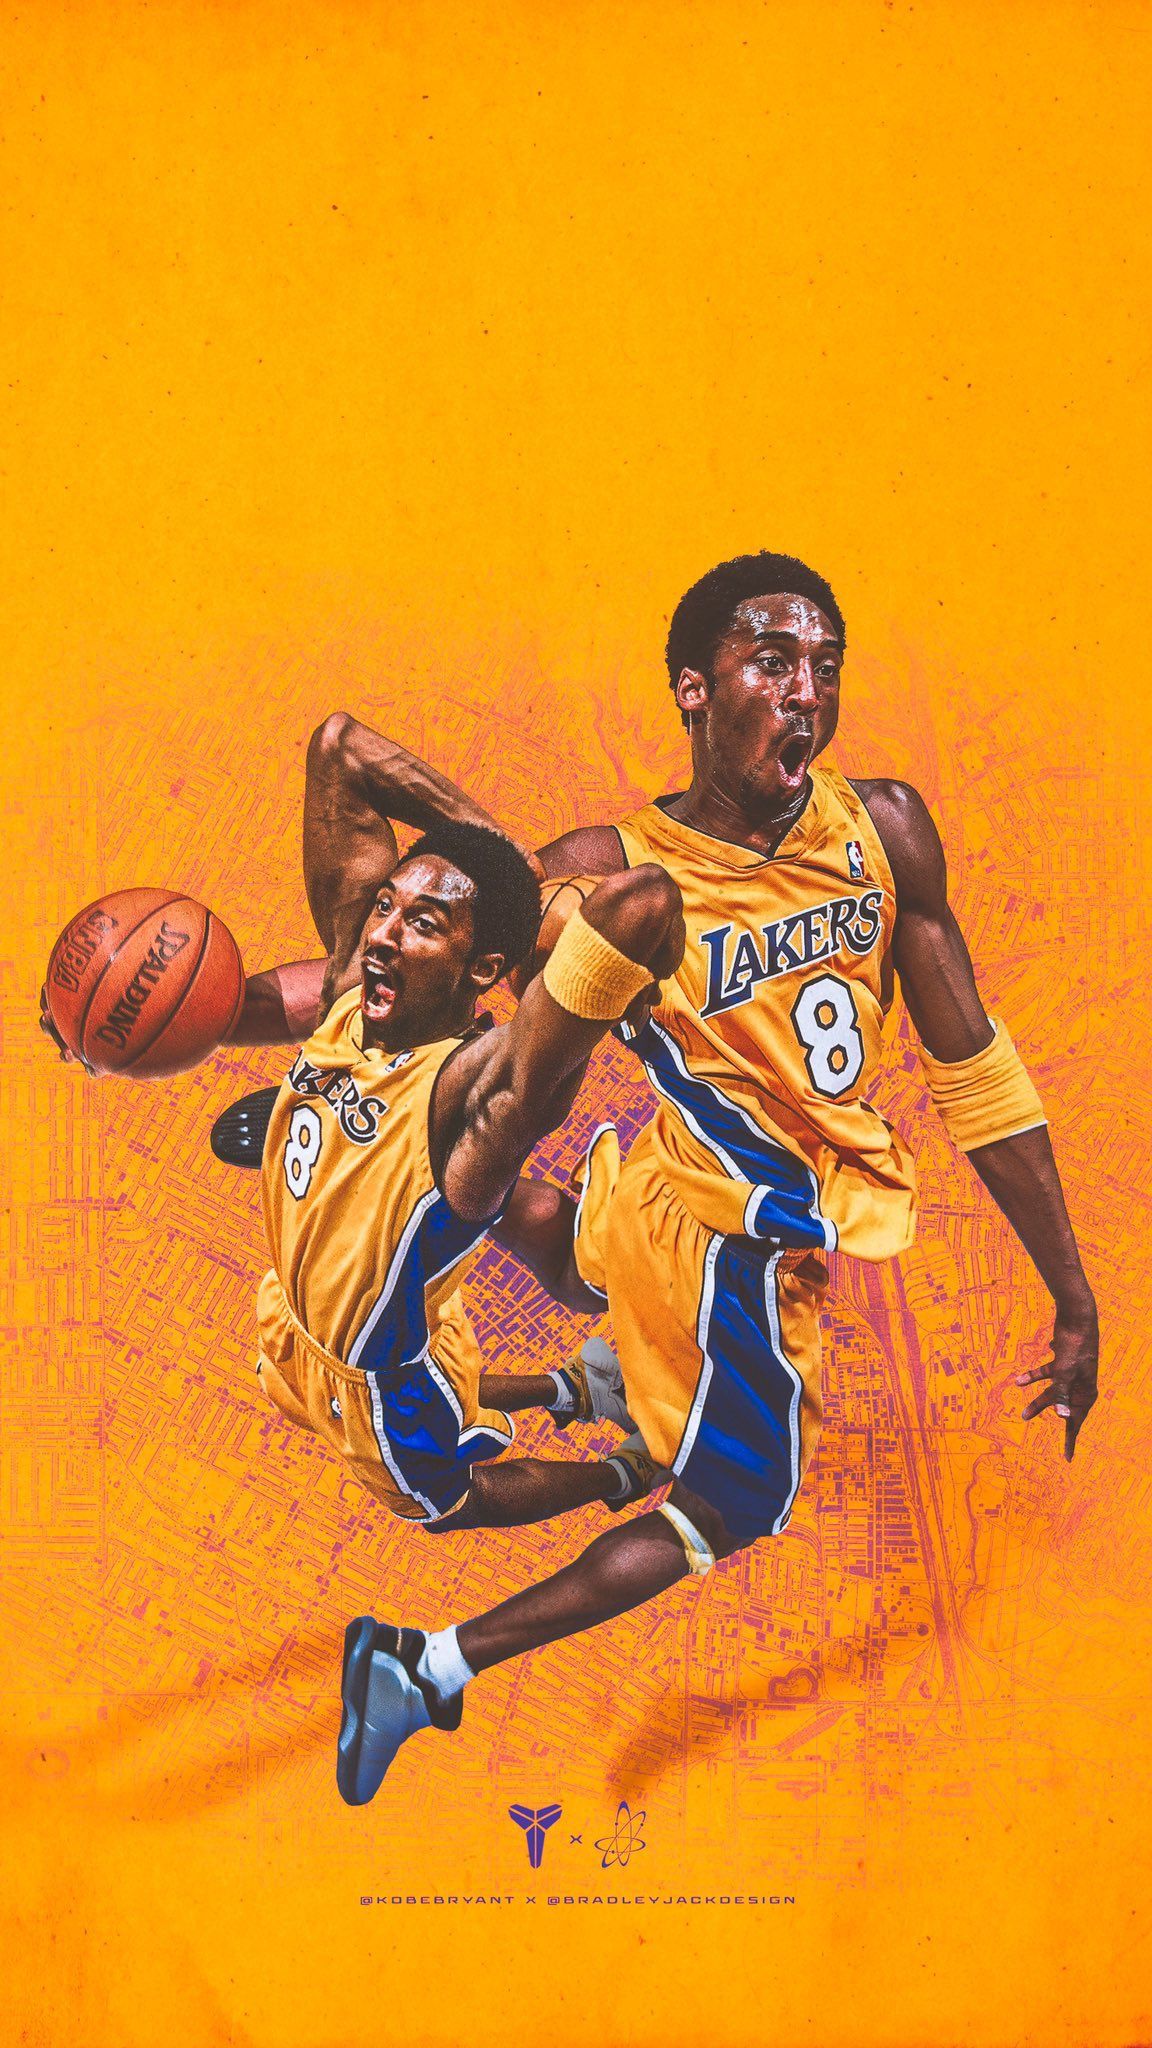 Kobe. Kobe bryant poster, Kobe bryant picture, Kobe bryant 24